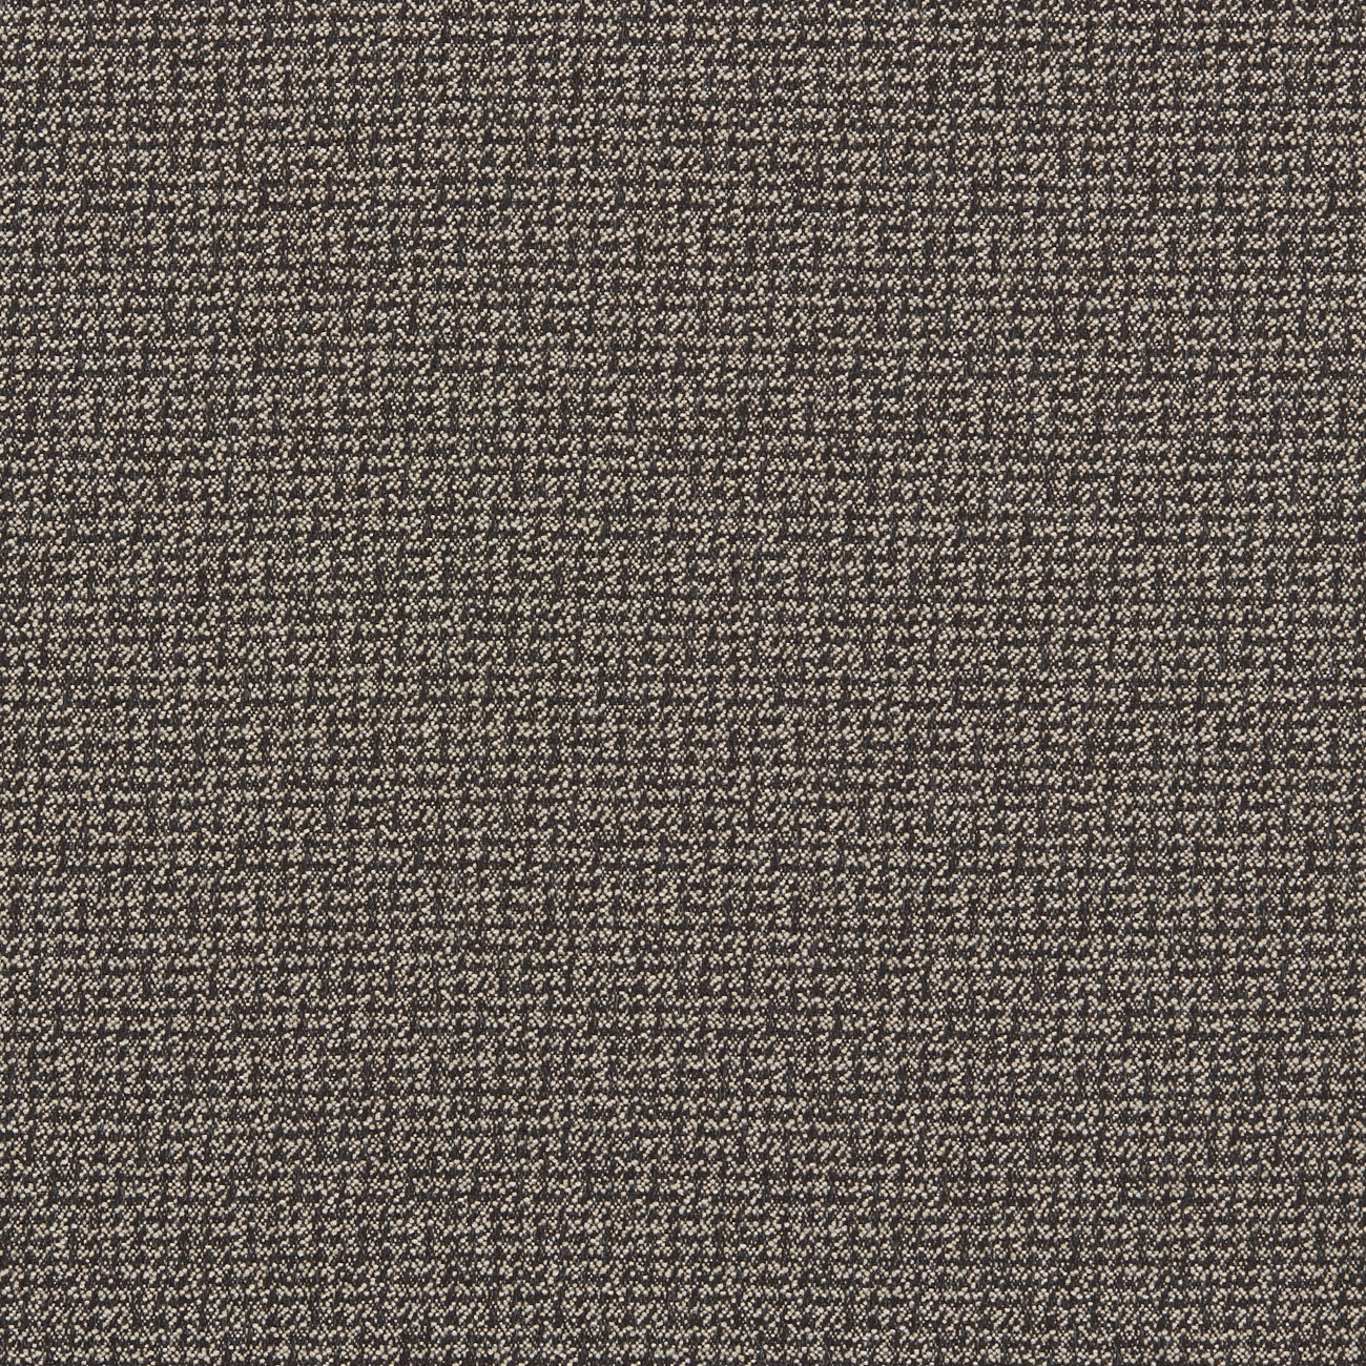 Malone Charcoal Fabric by CNC